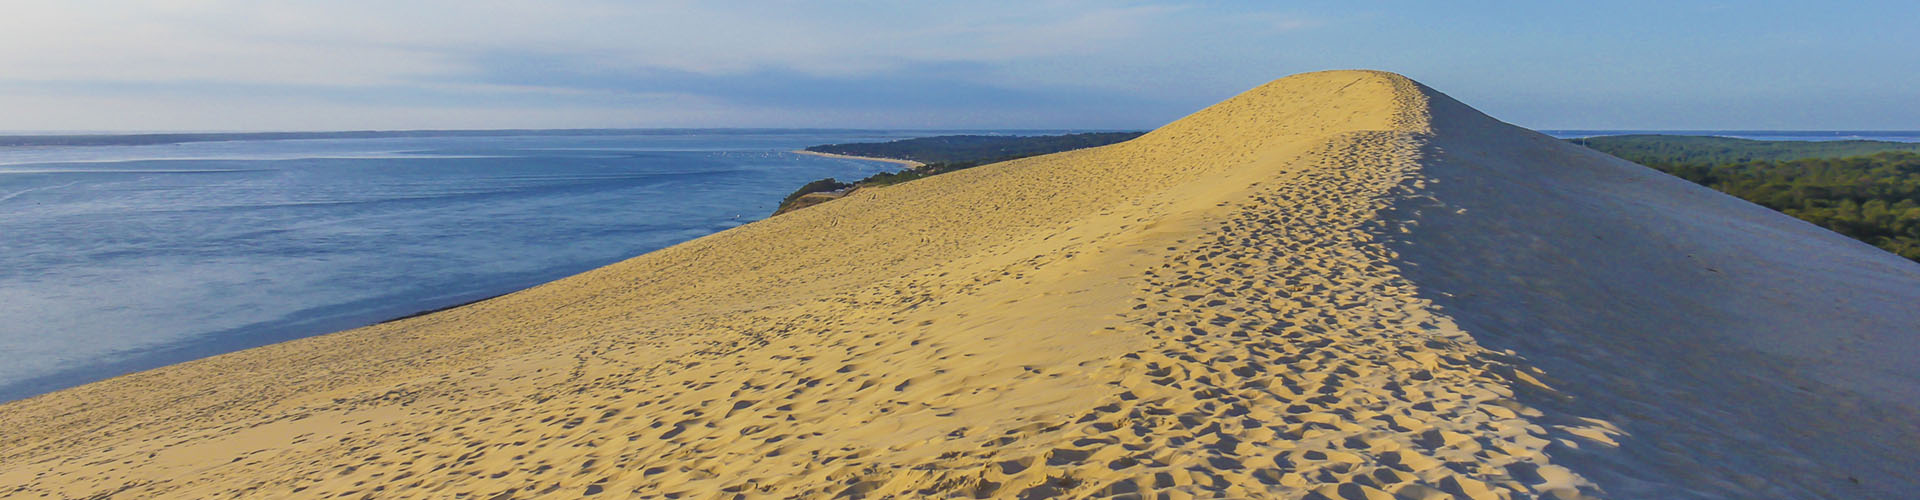 La Dune du Pilat sur le Bassin d'Arcachon